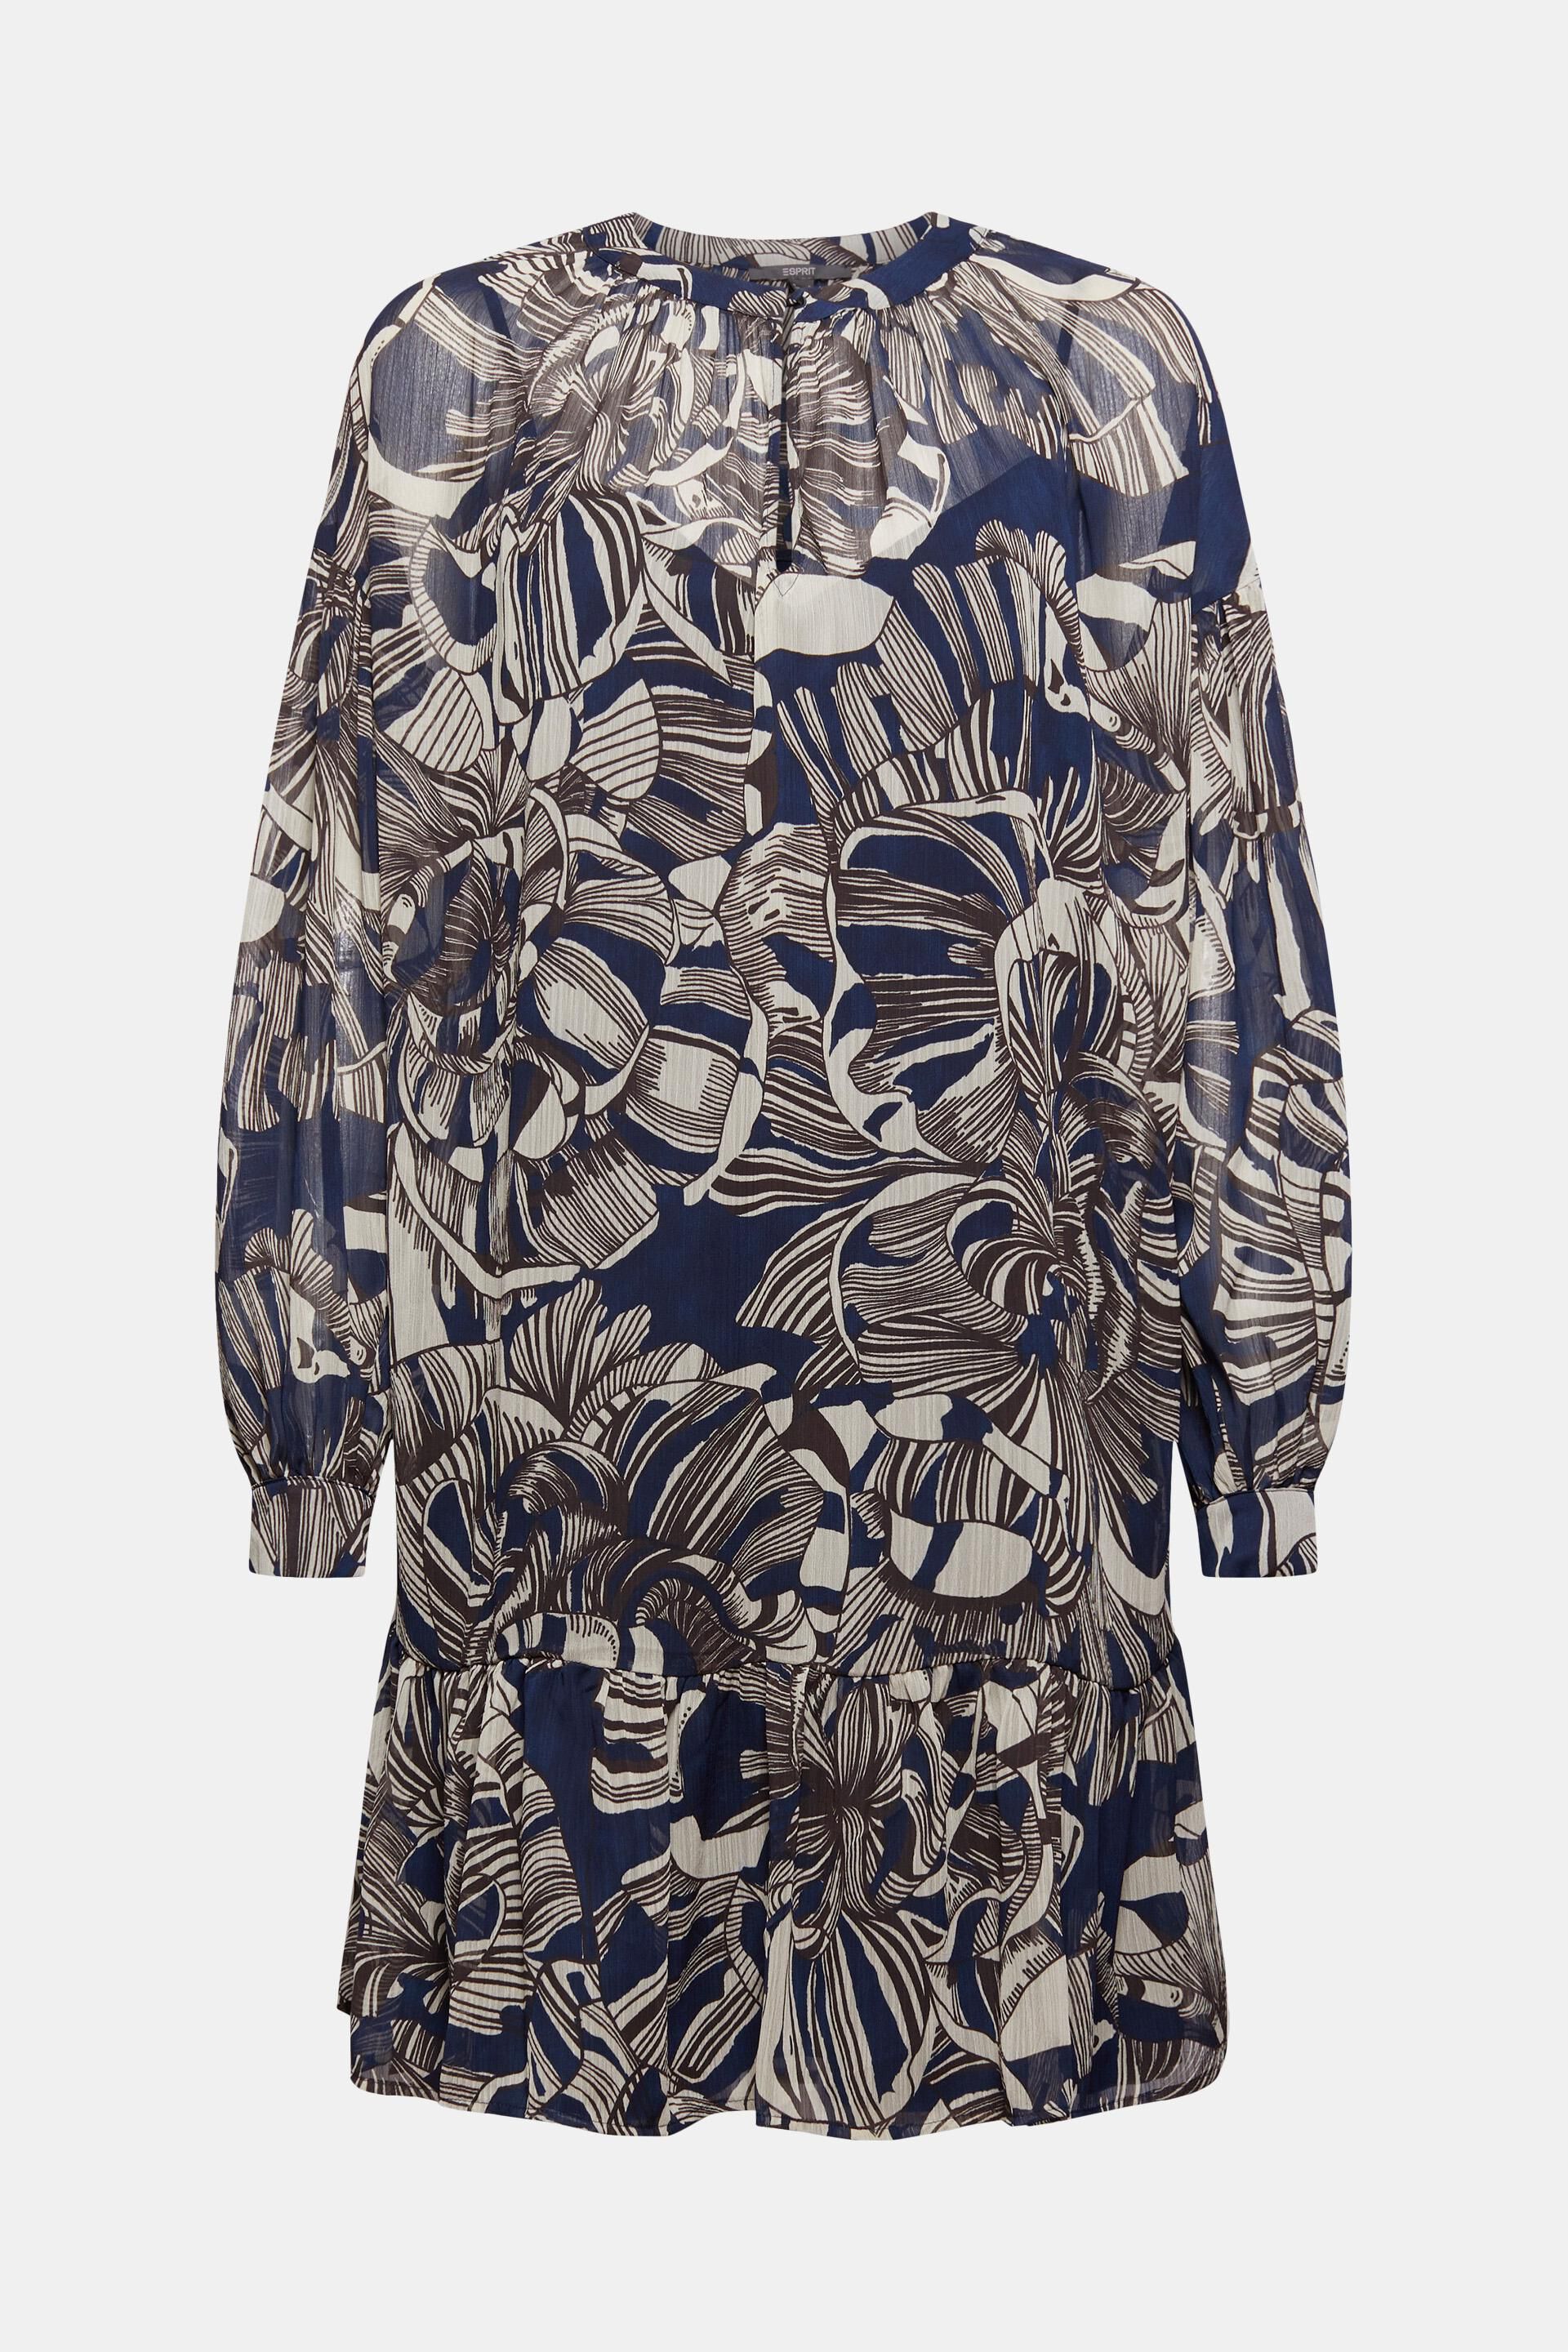 Amisu Chiffon jurk bloemenprint casual uitstraling Mode Jurken Chiffon jurken 